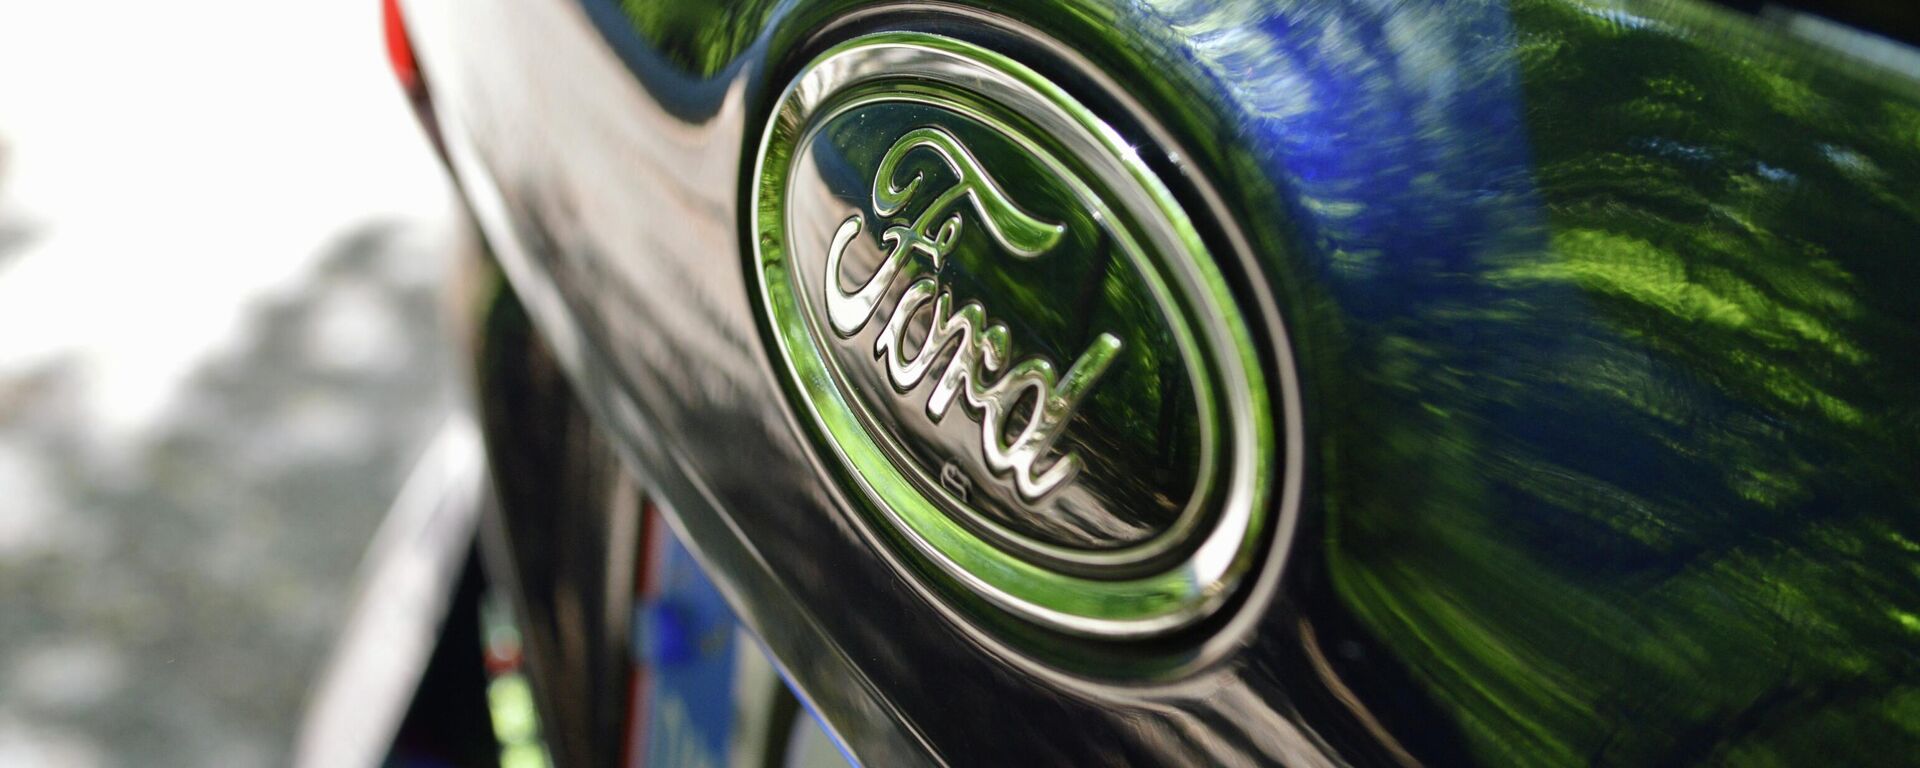 El logotipo de Ford en un vehículo de la marca - Sputnik Mundo, 1920, 28.05.2021